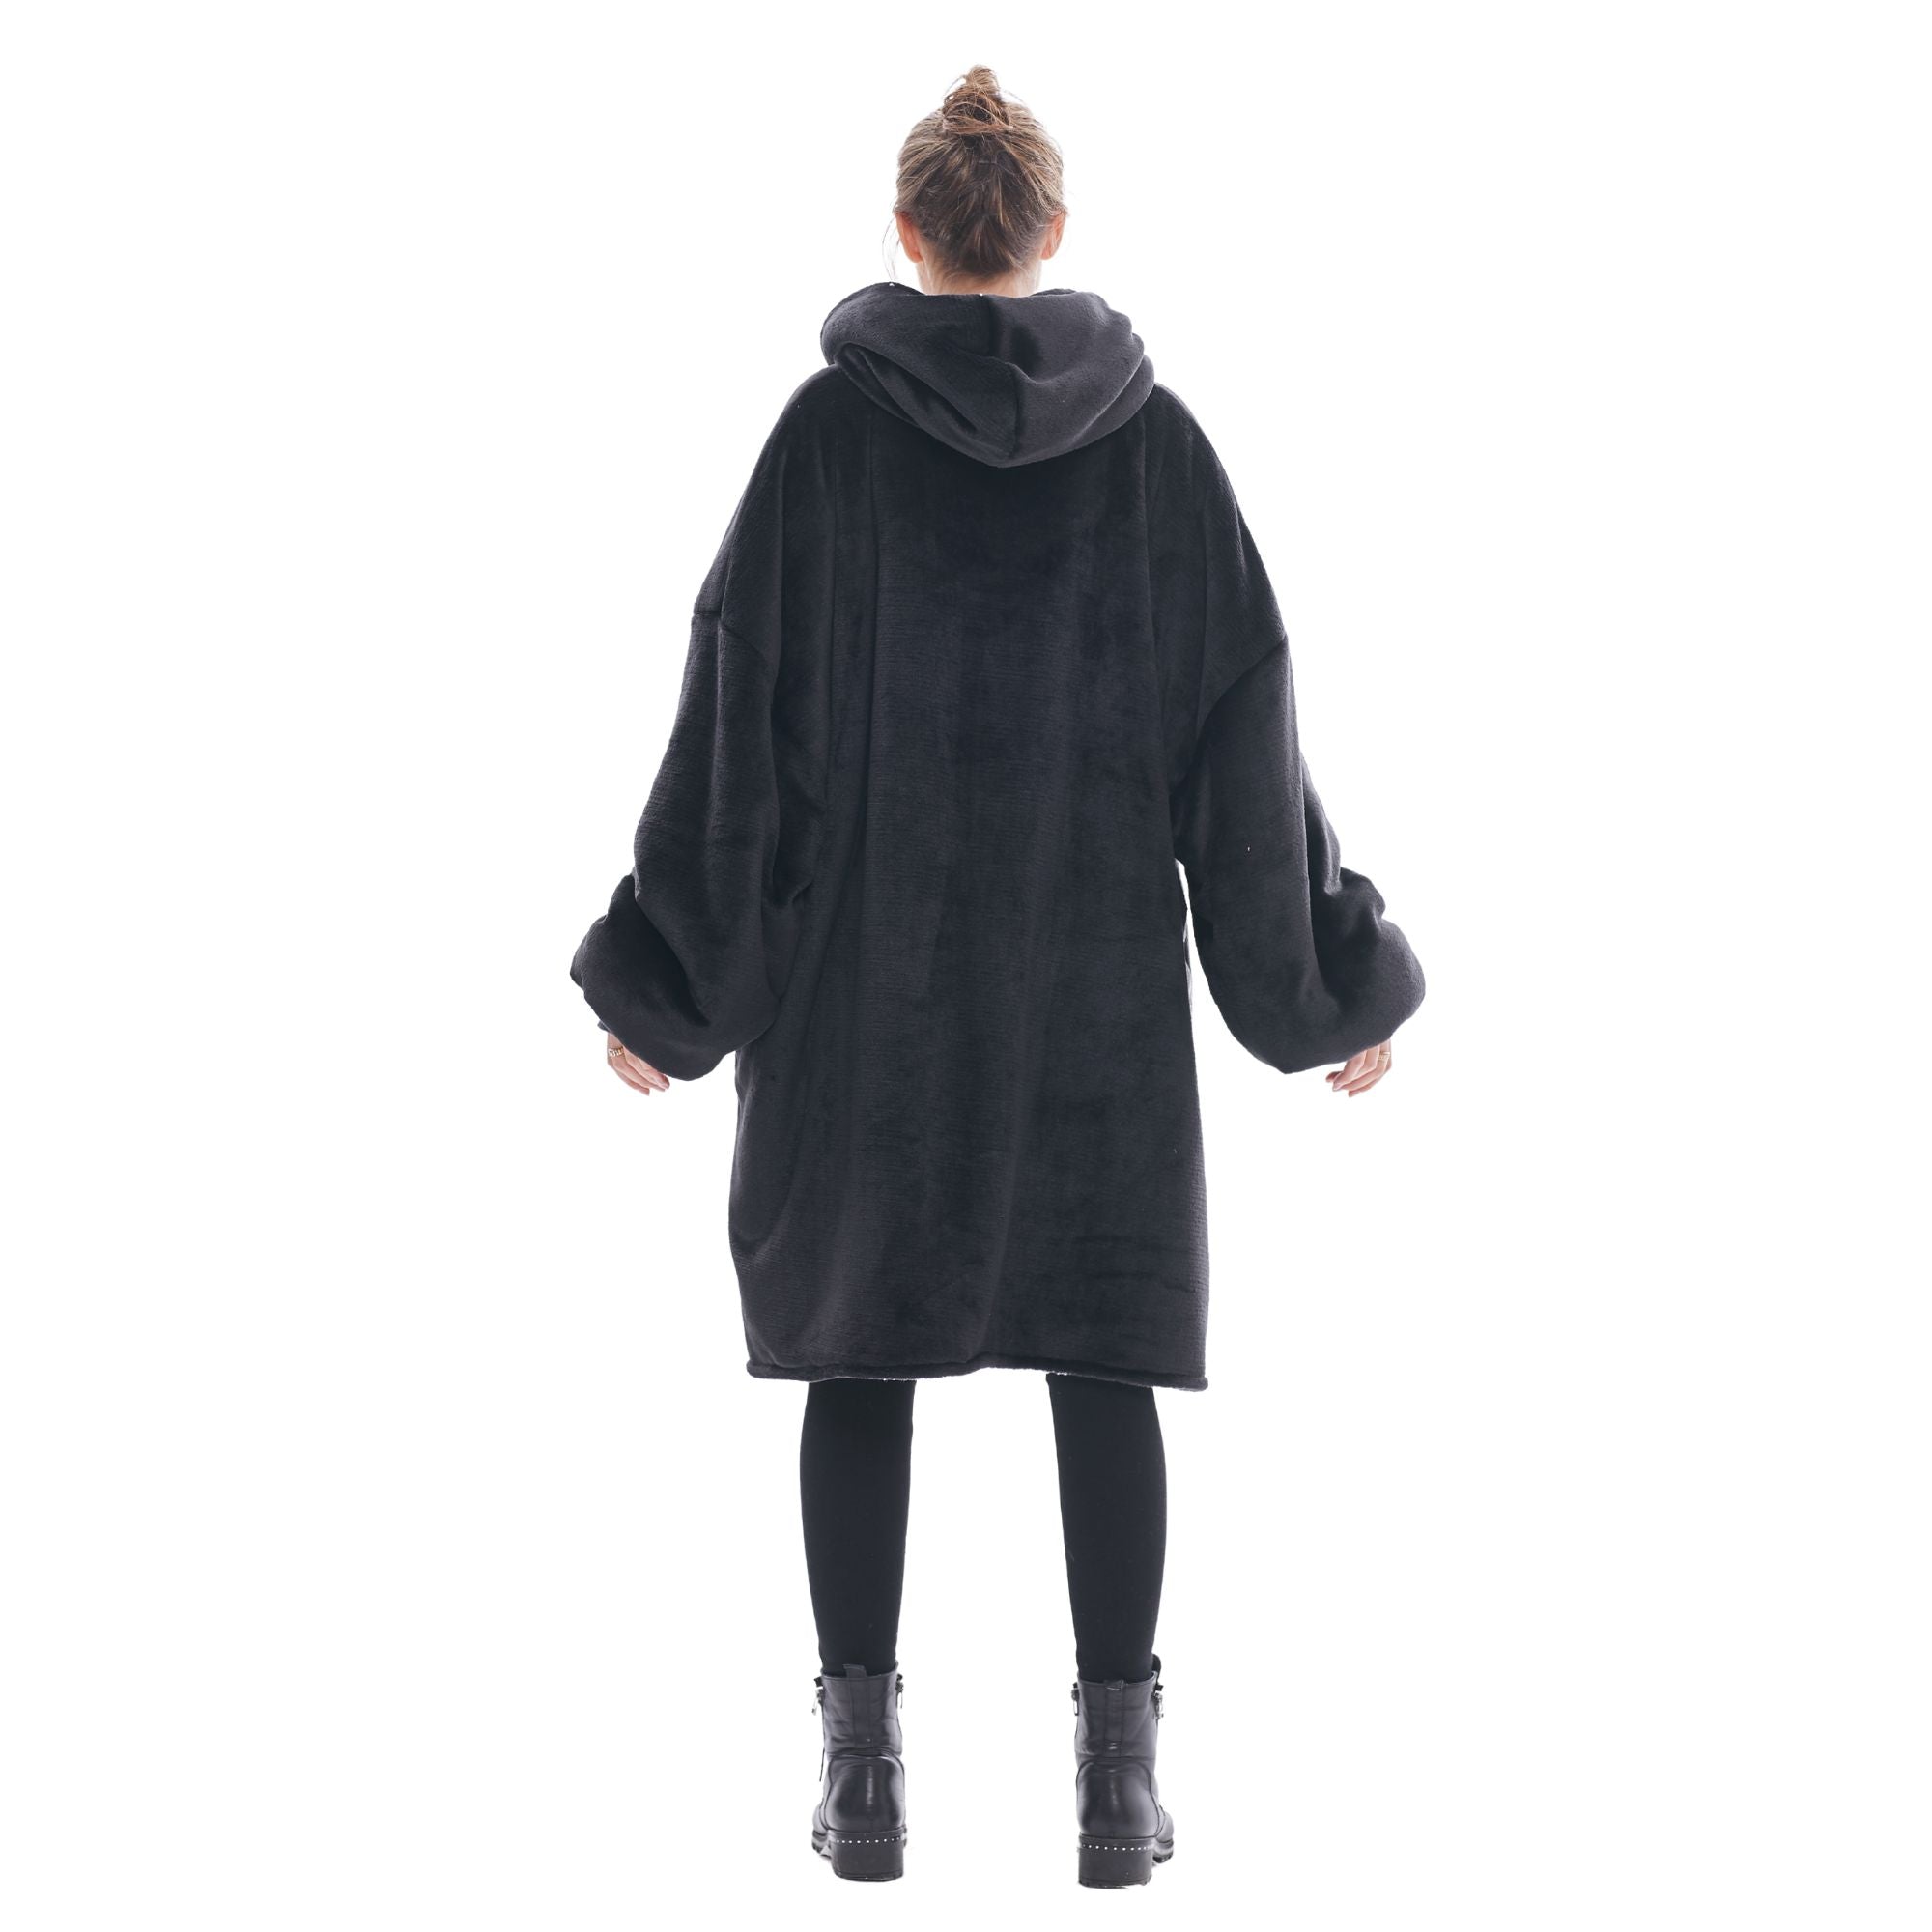 Pull Plaid Femme Sweat Polaire Géant Oversized Hoodie® chaud confortable doux moelleux cosy noir